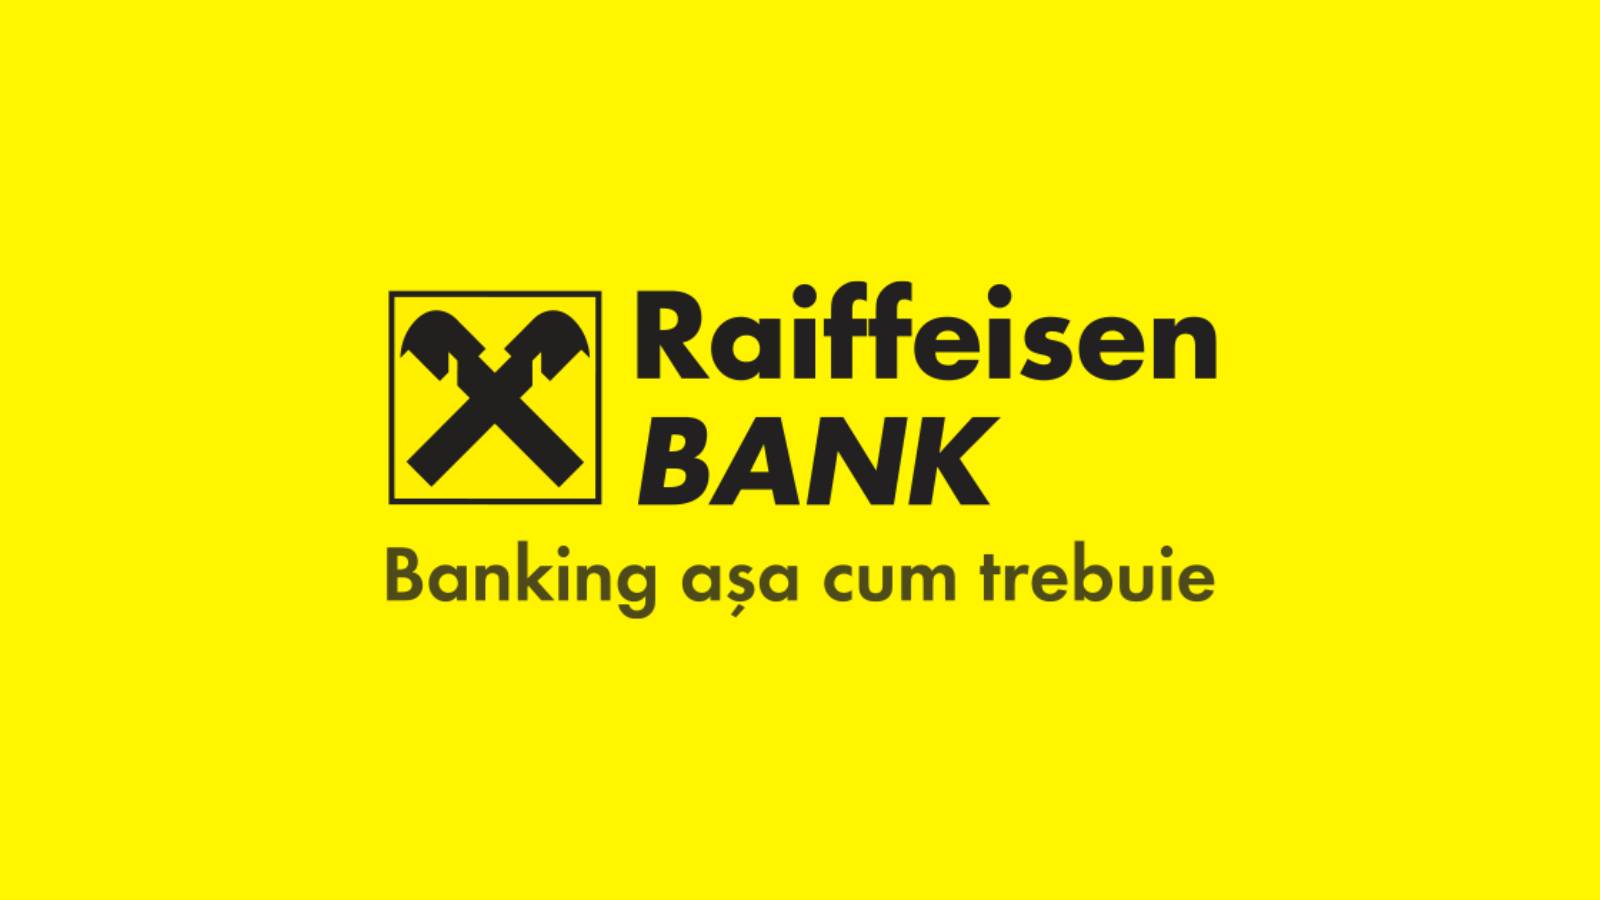 Raiffeisen Bank anbefaling